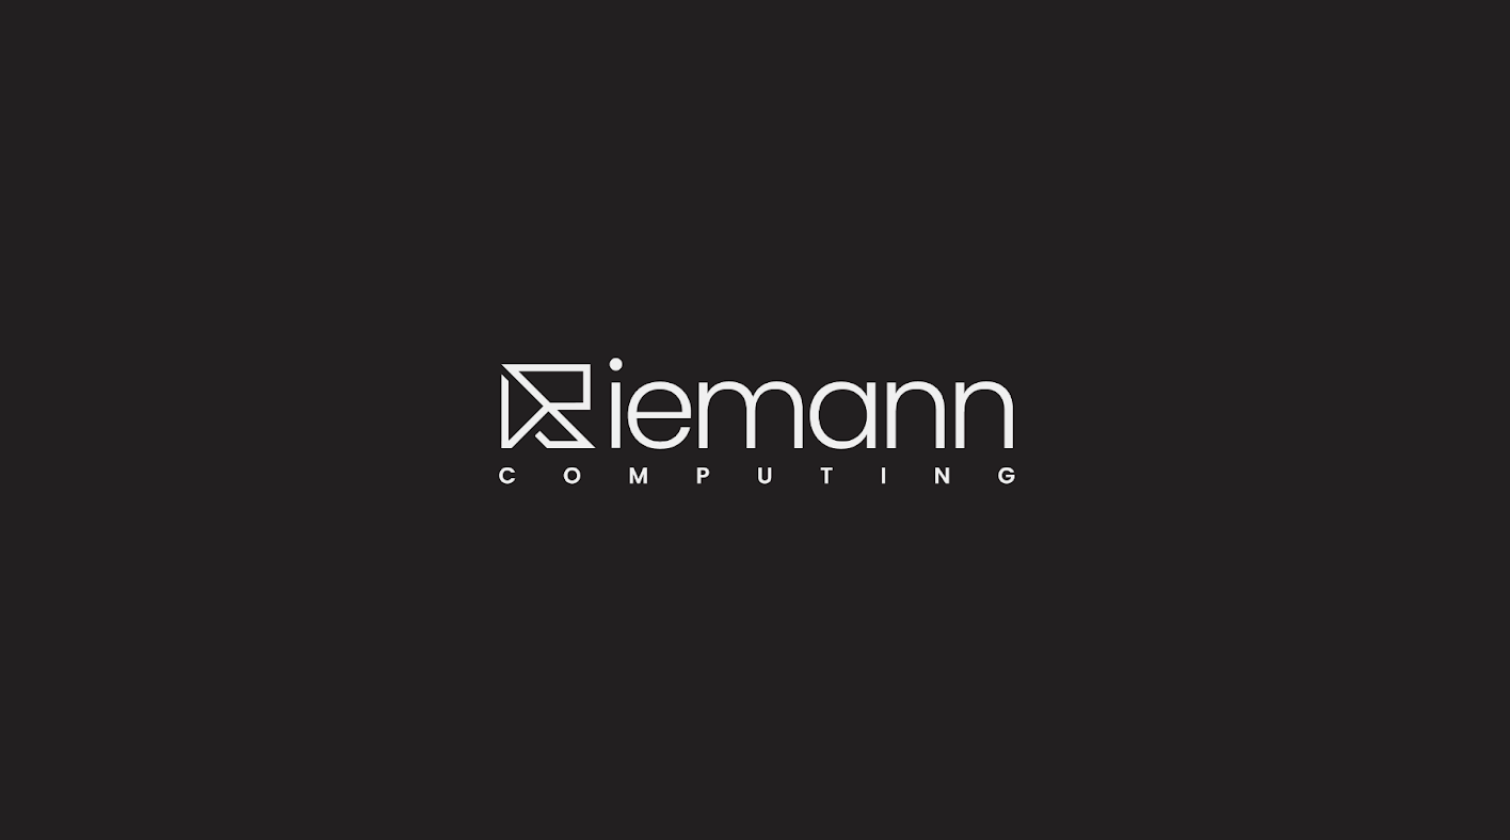 Riemann Computing